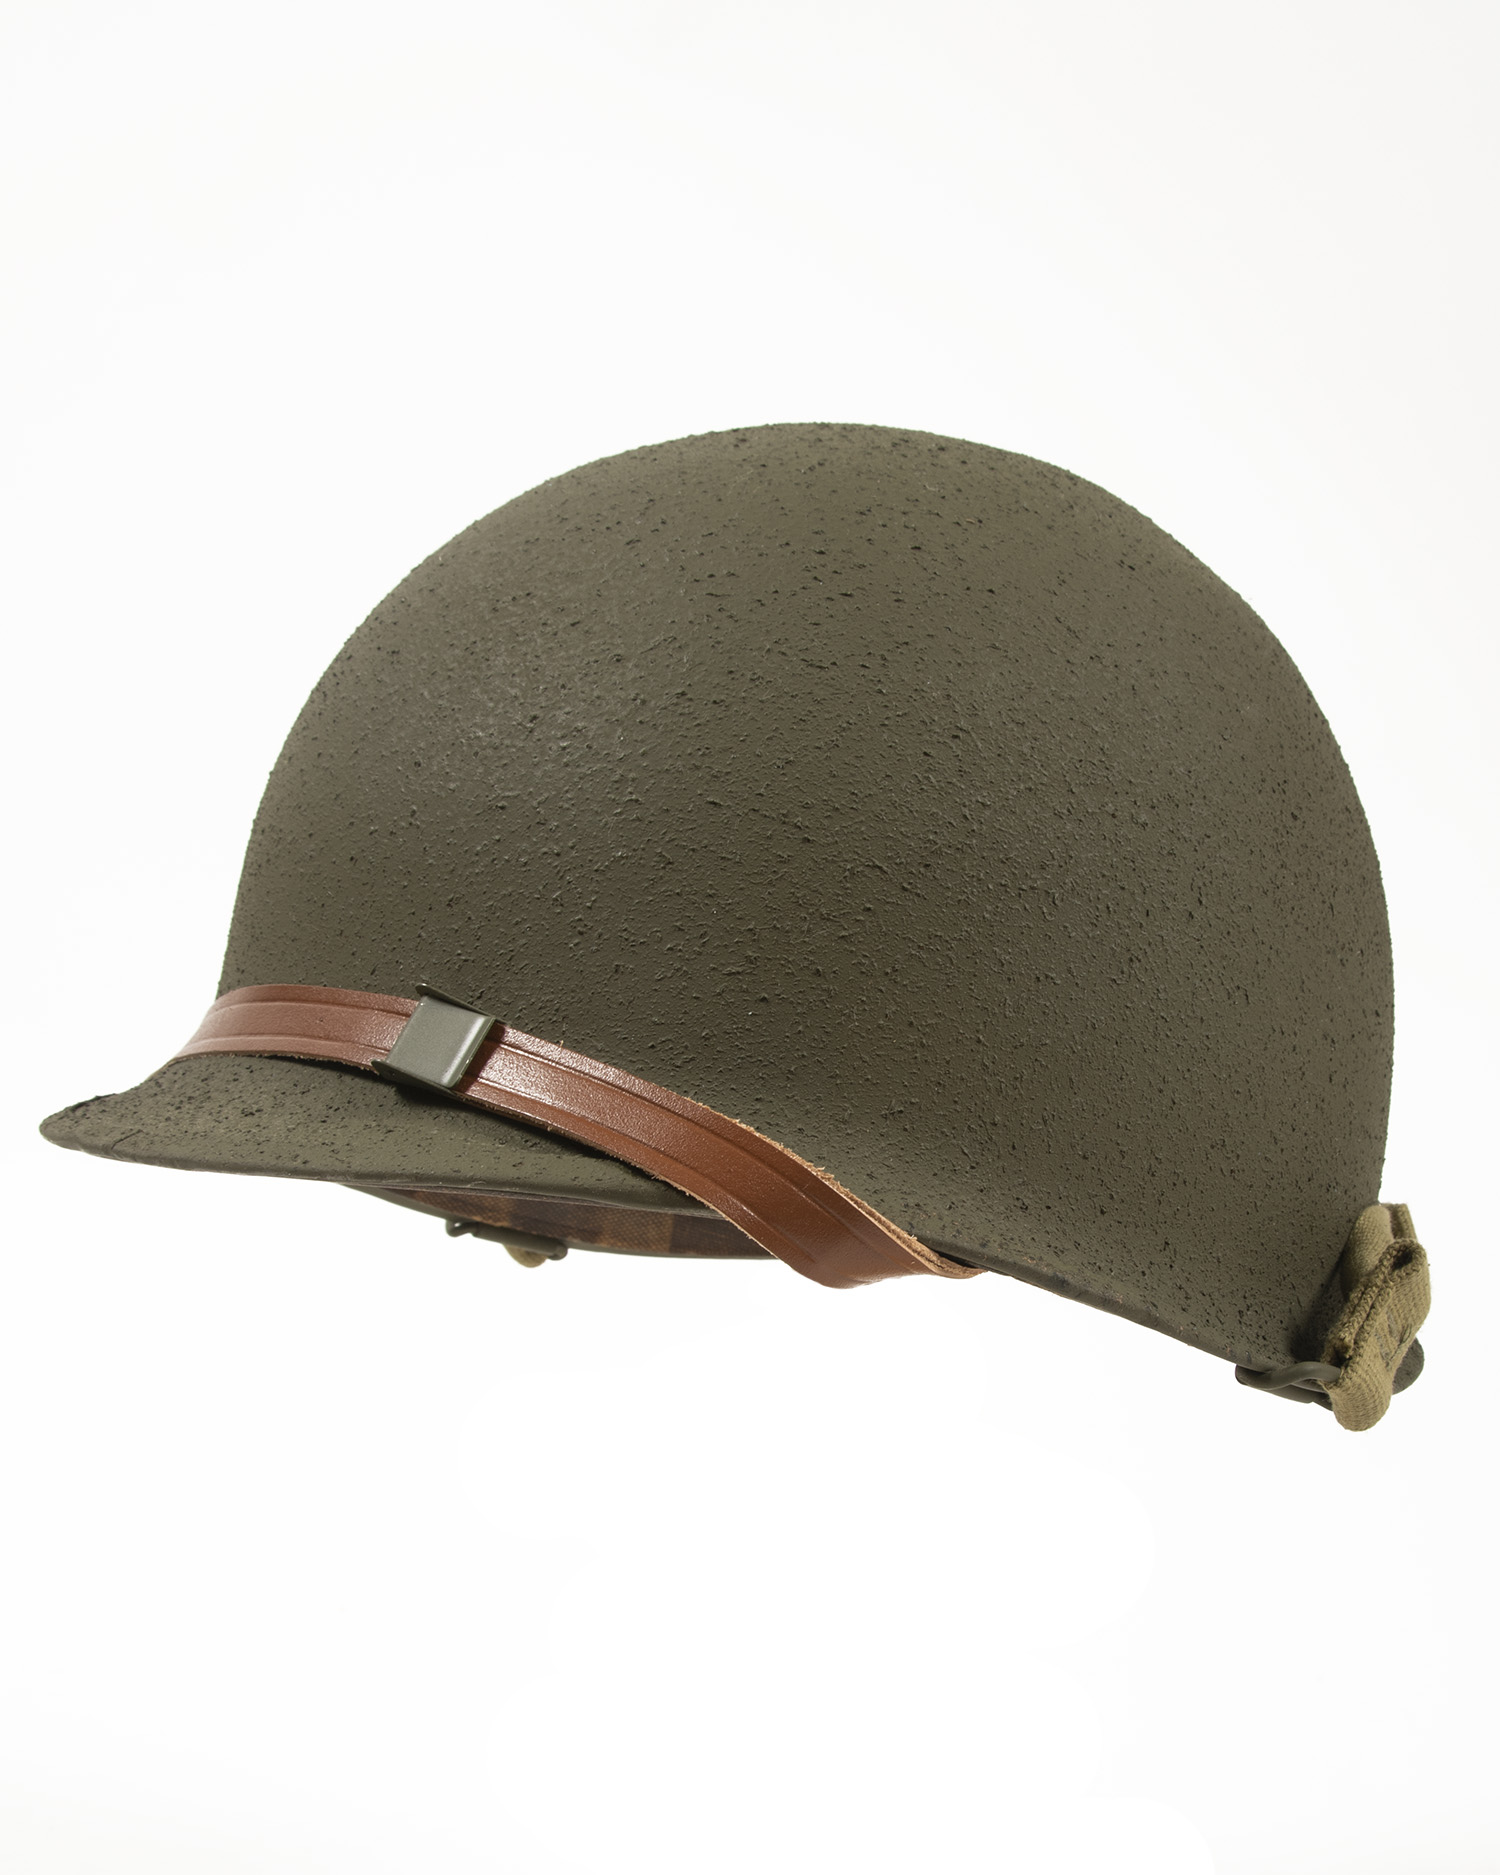 US WWII M1 Helmet | vlr.eng.br